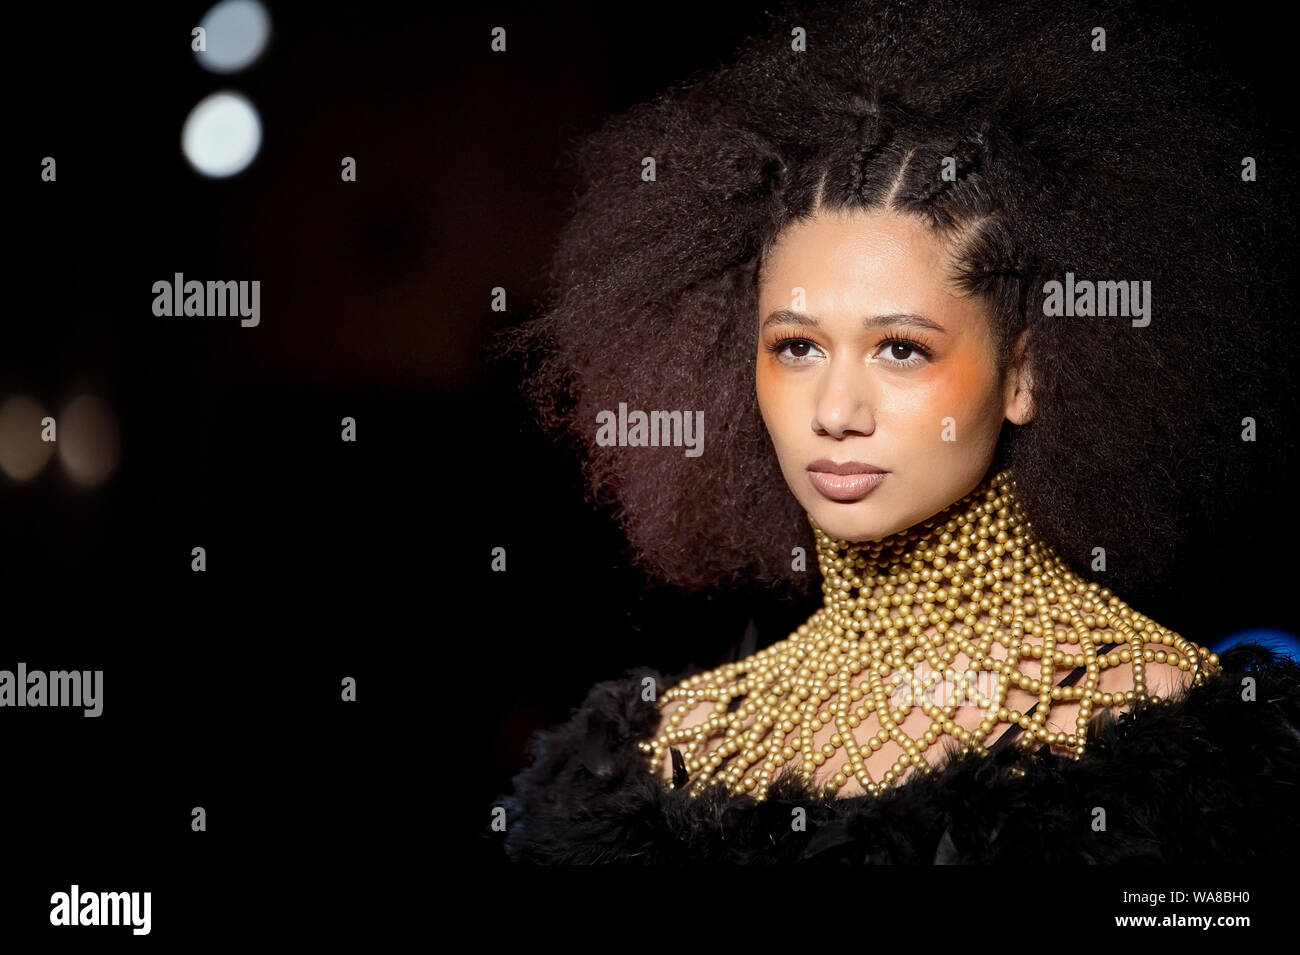 Londres 2019 Fashion Show de l'Afrique. Image sélectionnée de défilés mettant en lumière les tendances design & impressions éclatantes. Banque D'Images